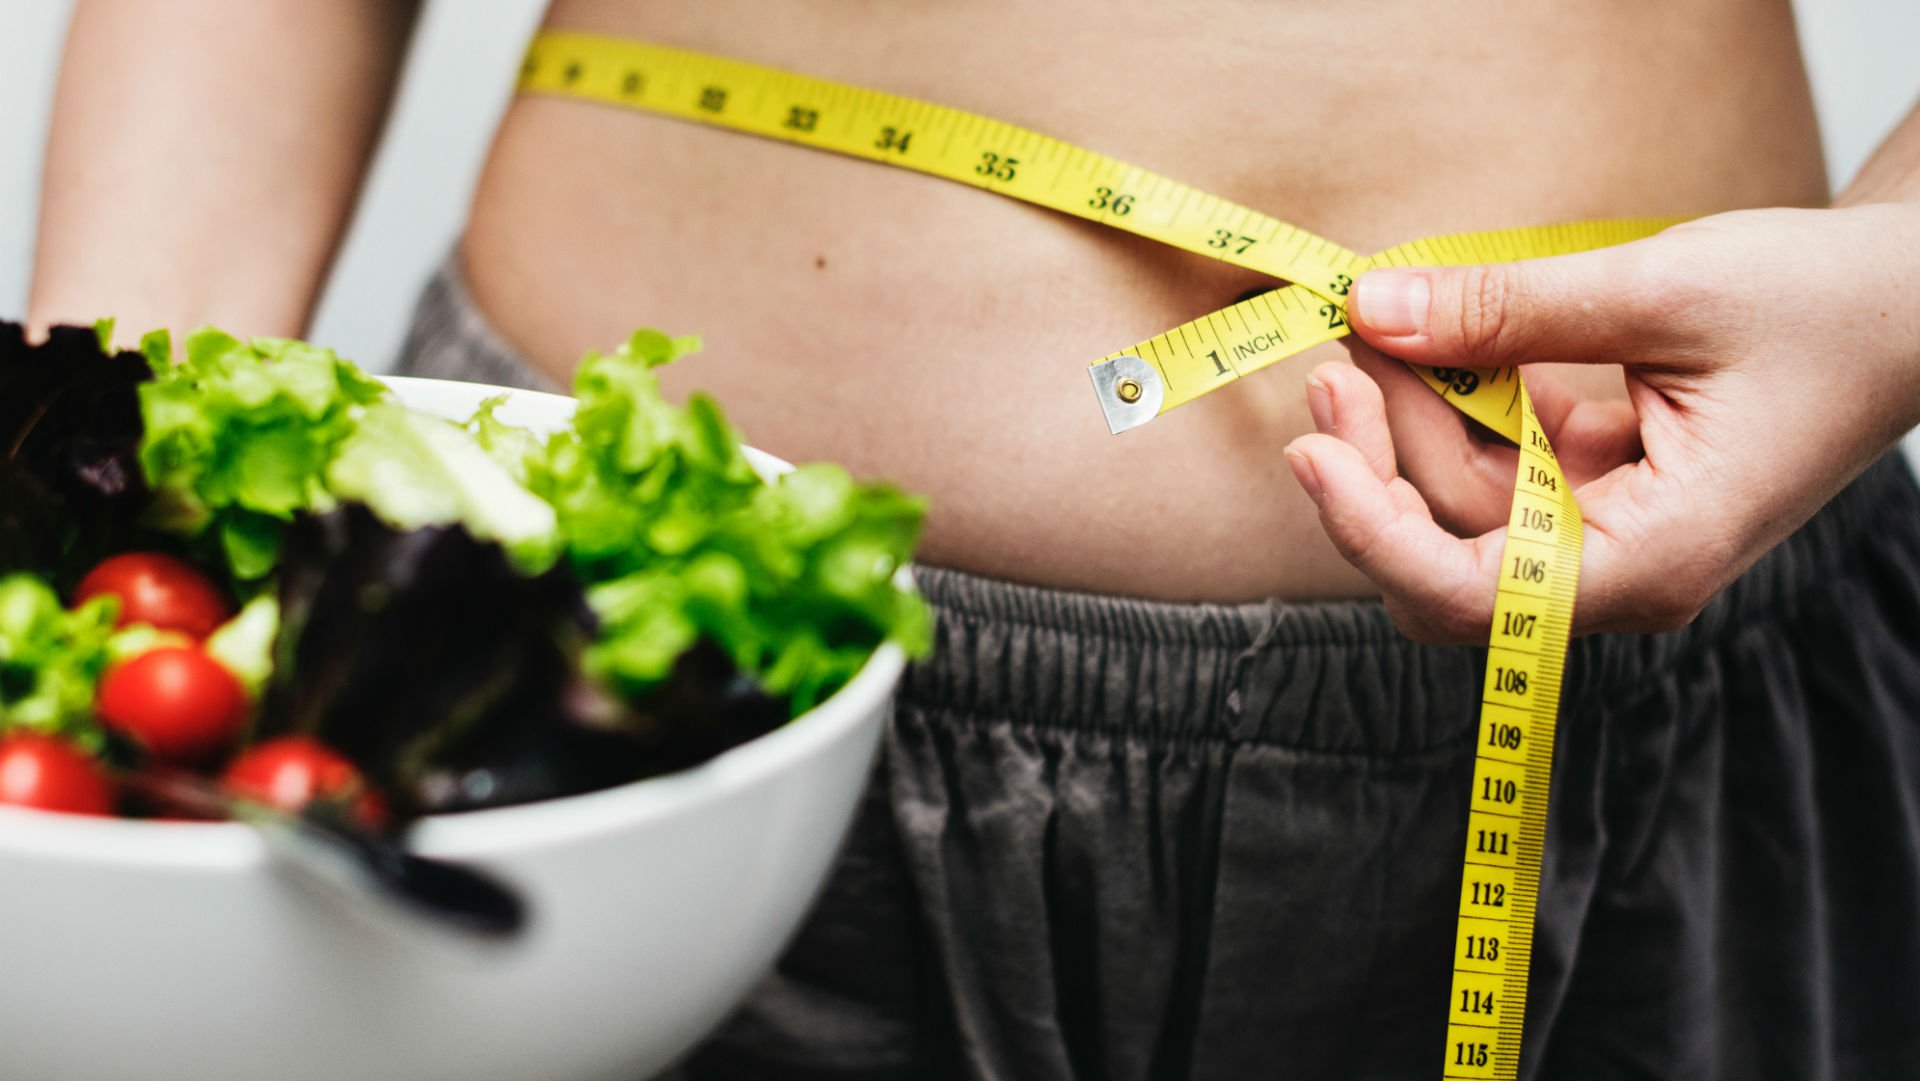 Foto de capa do artigo "O que ajuda a manter o peso: exercício ou dieta? Entenda!"